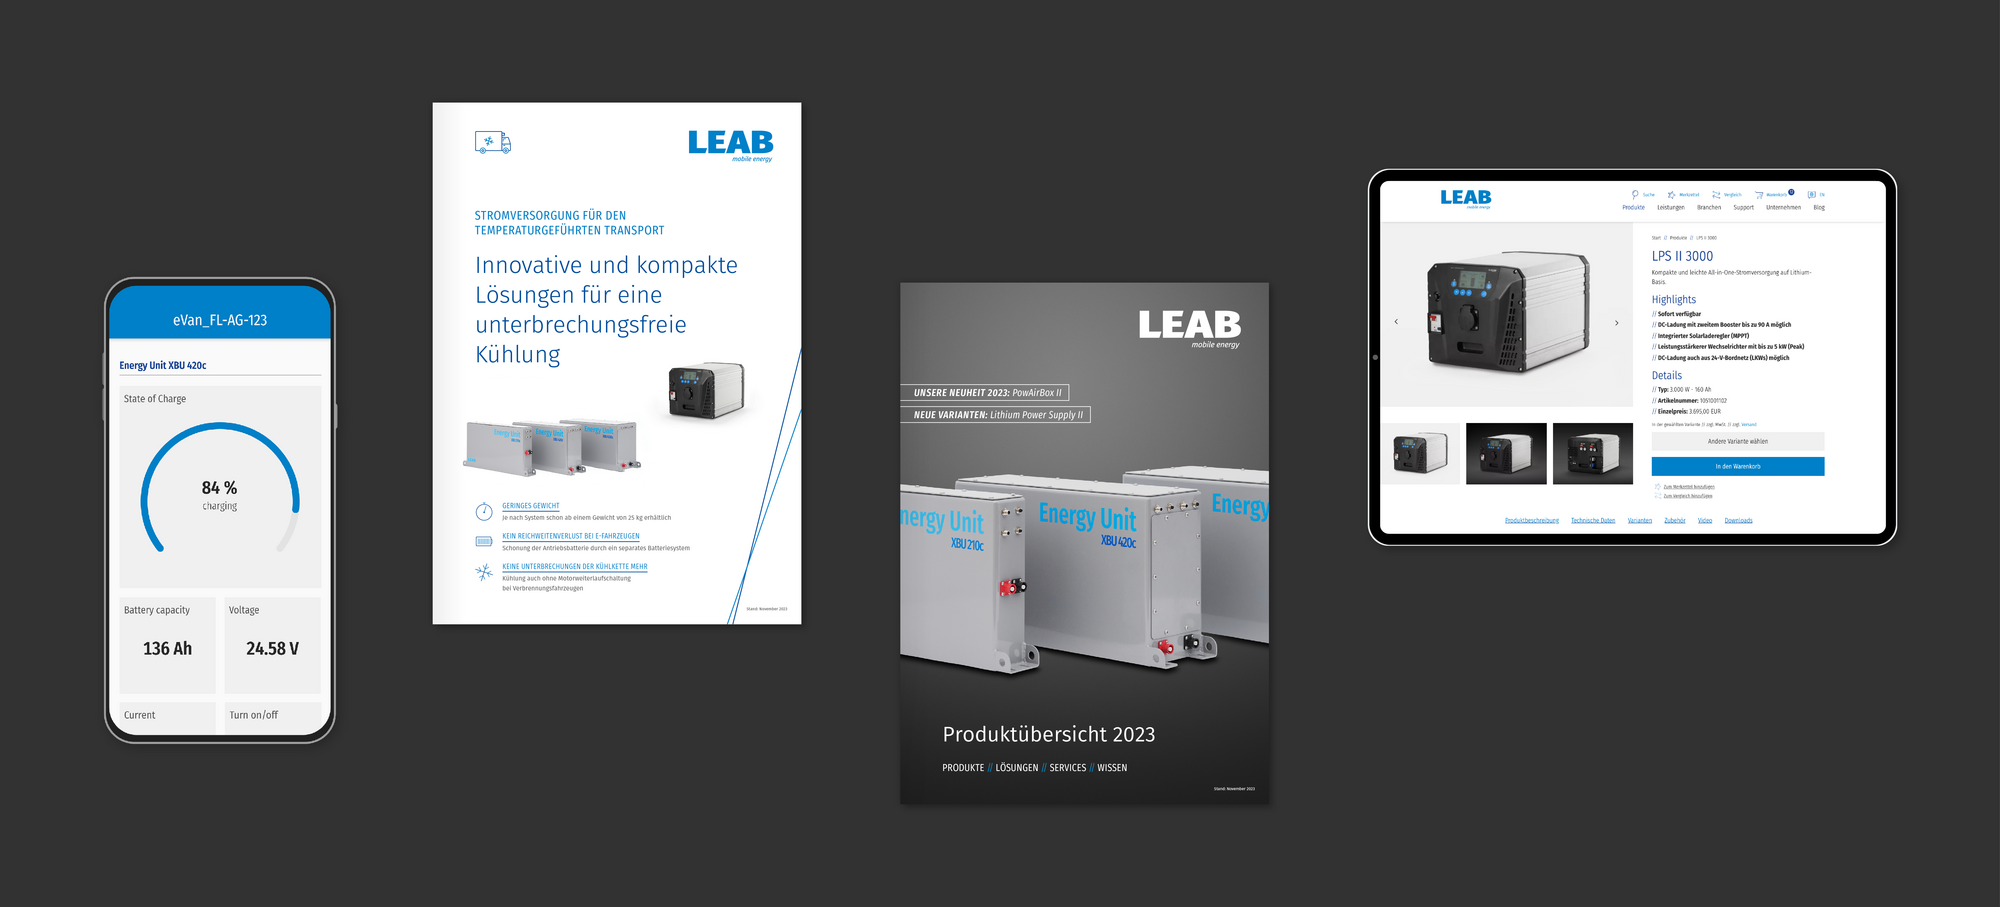 Eine Grafik zeigt auf schwarzem Hintergrund die Produkte, die für LEAB entwickelt wurden, mit dem charakteristischen Corporate Design.